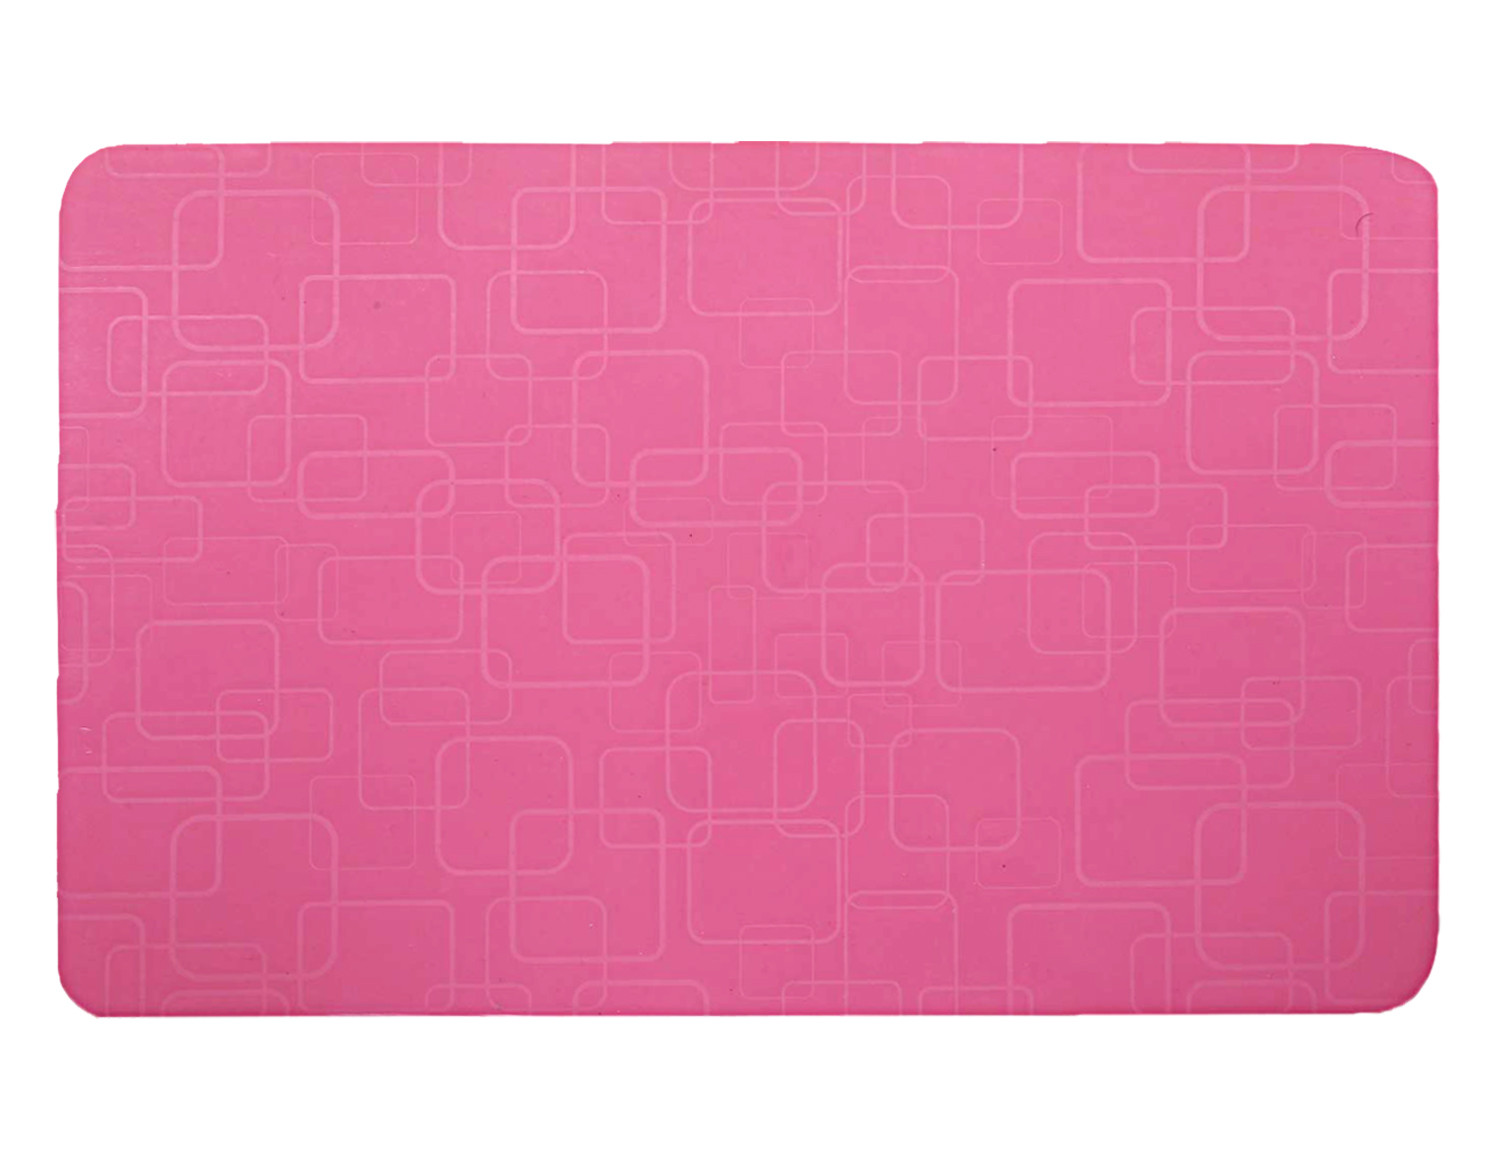 Kuber Industries PVC Refrigerator/Fridge Drawer Mat, Set of 6 (Pink)